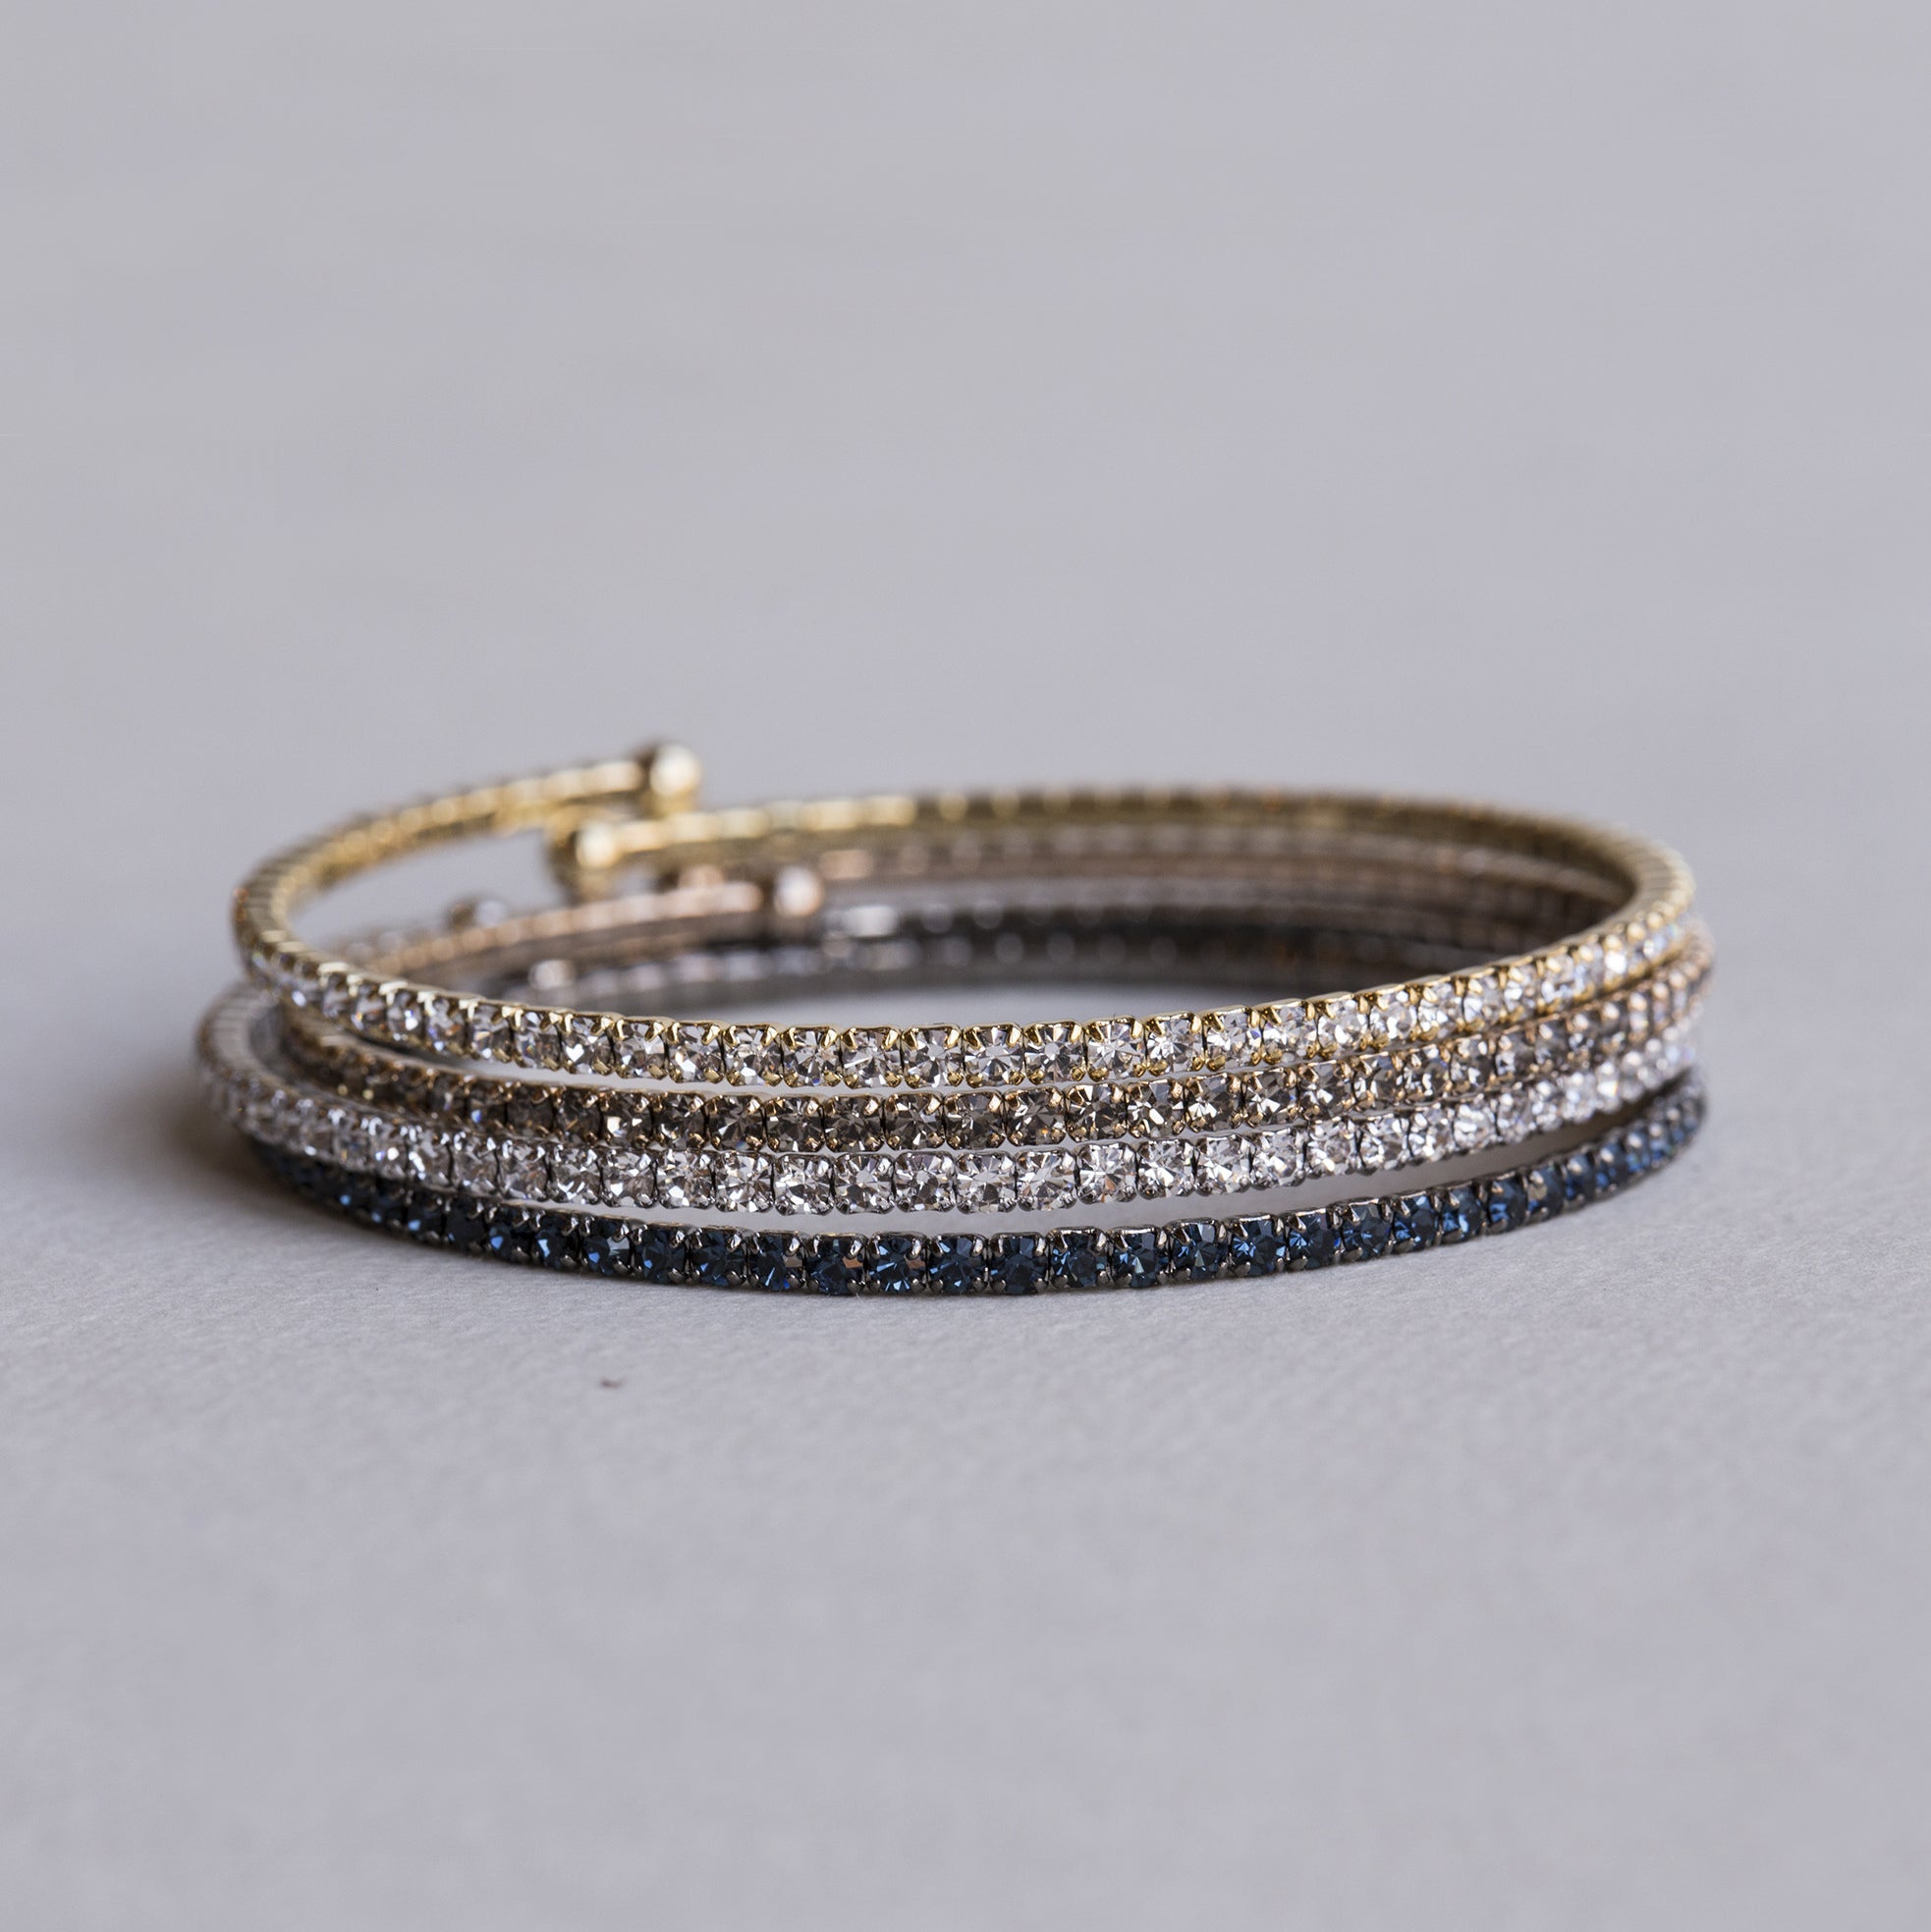 flexible and sparkly diamante bangles